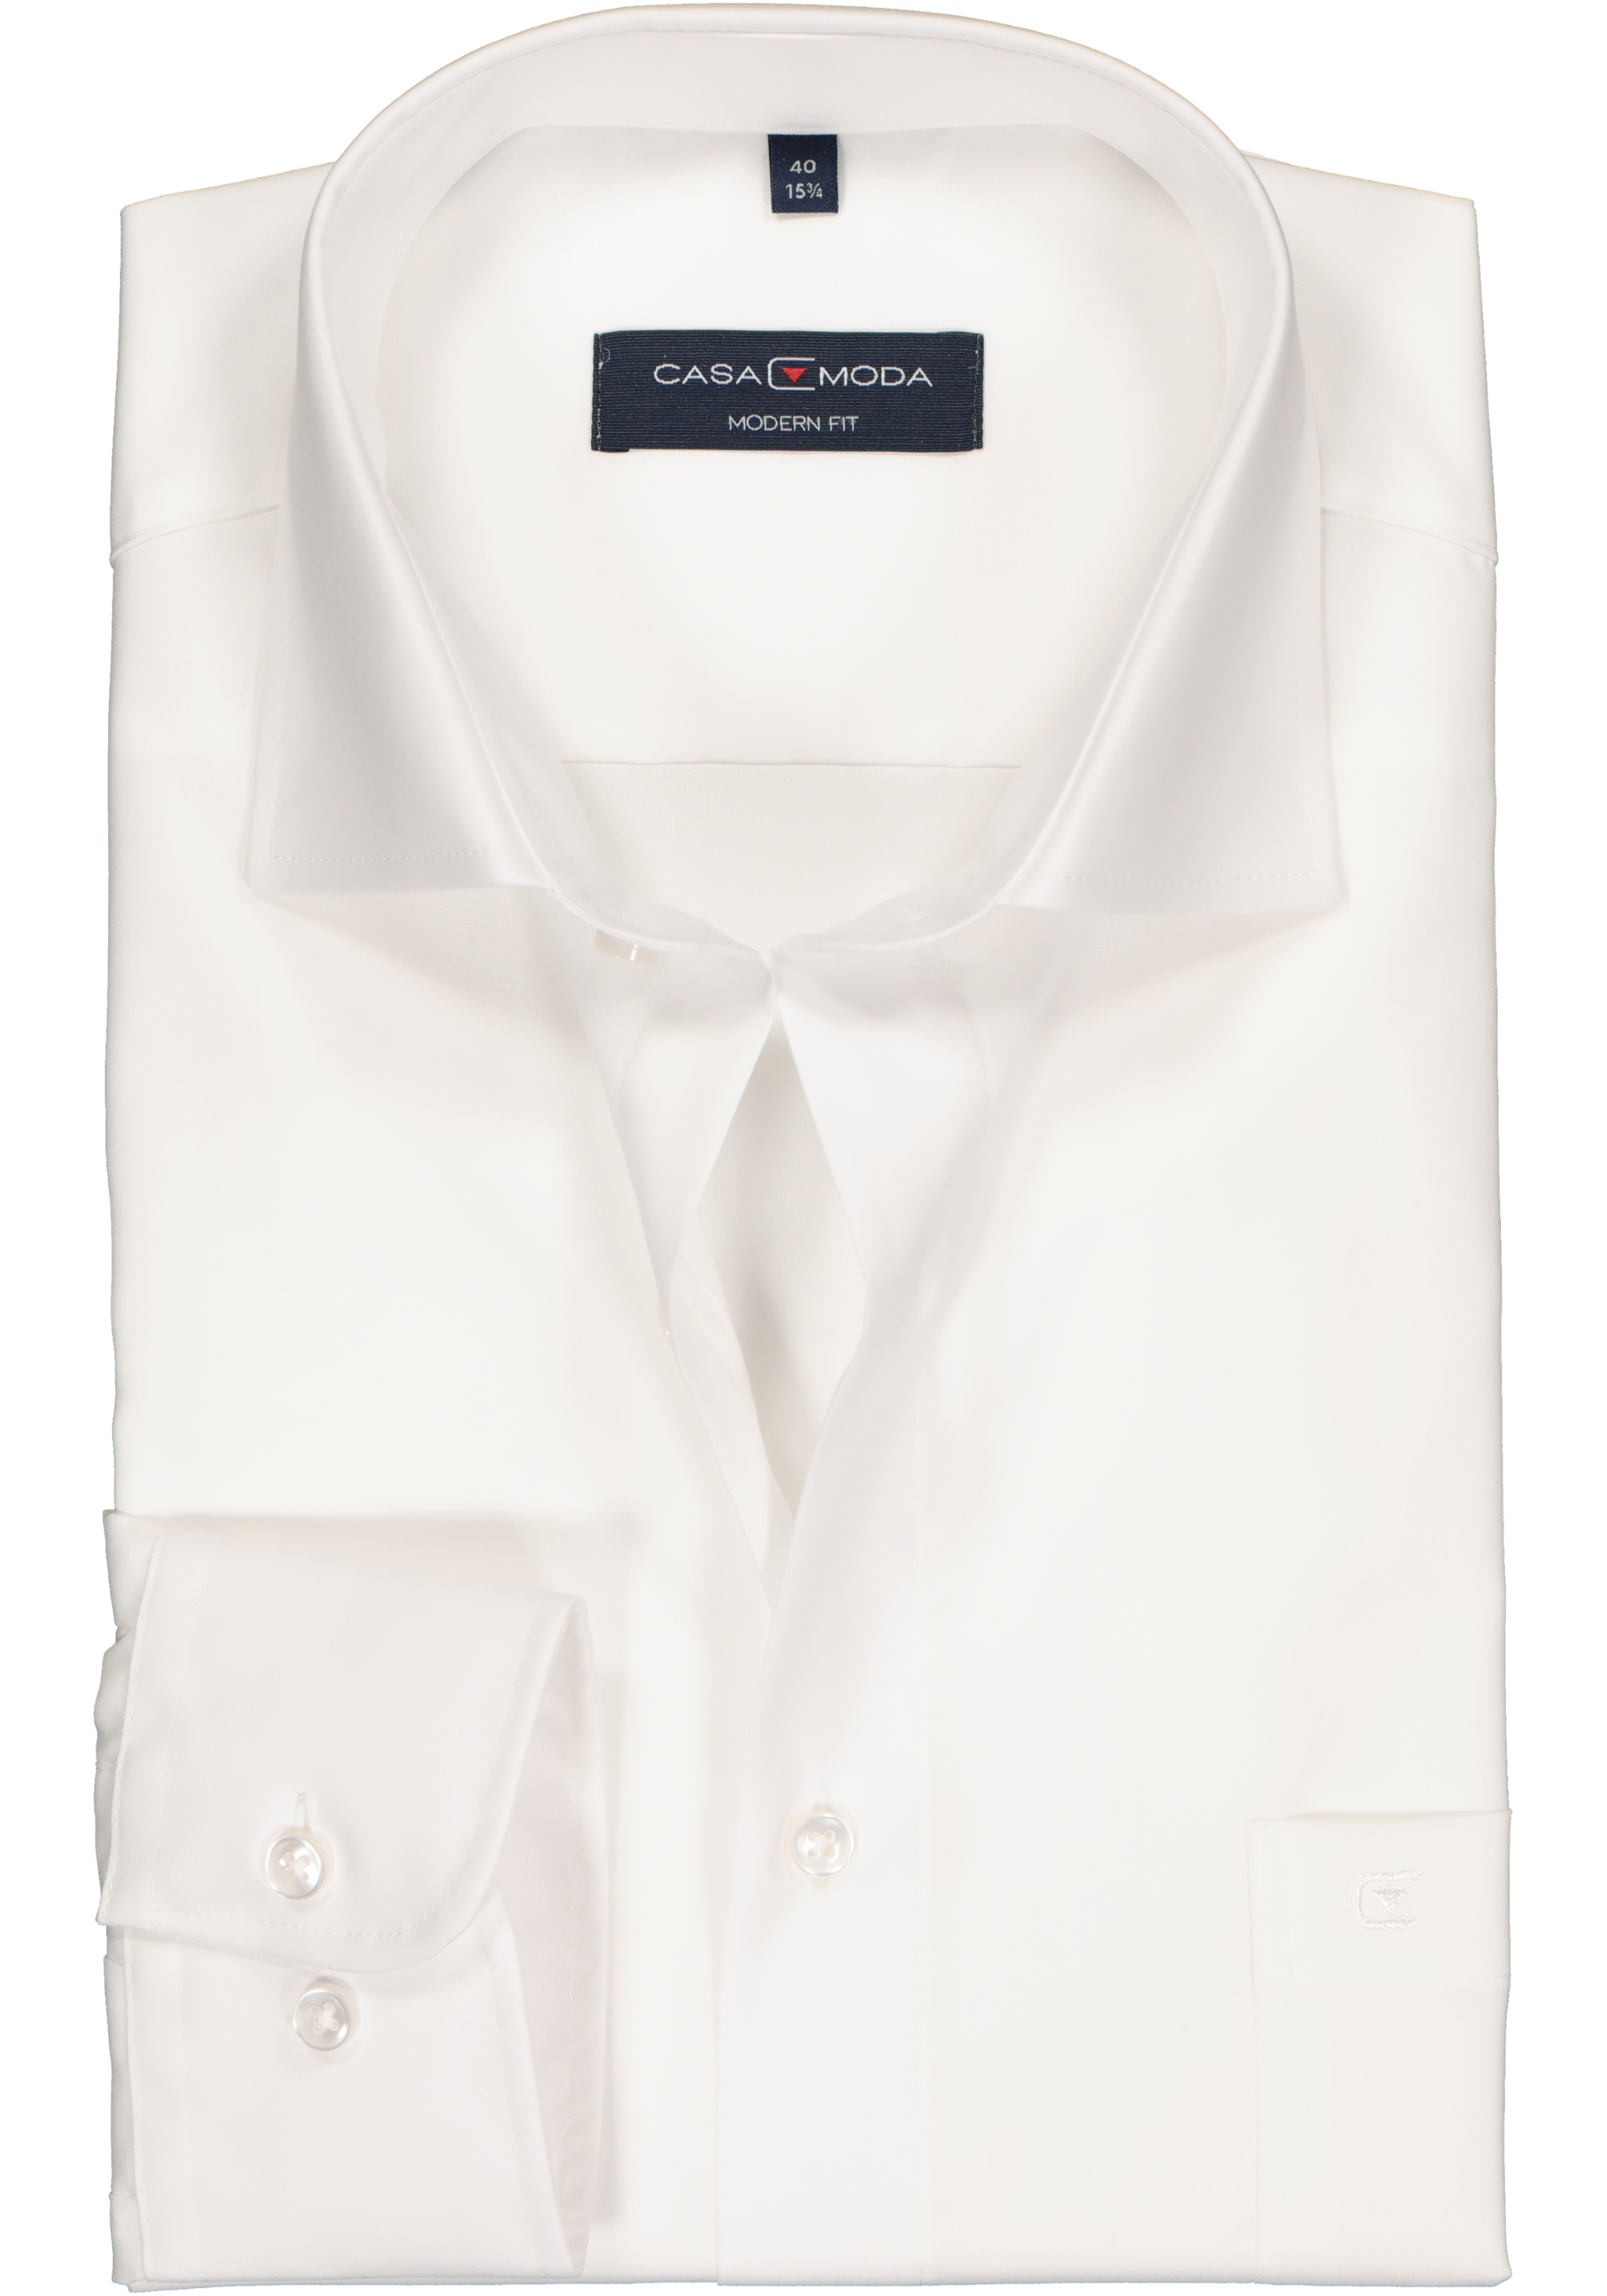 CASA MODA modern fit overhemd, mouwlengte 72 cm, wit